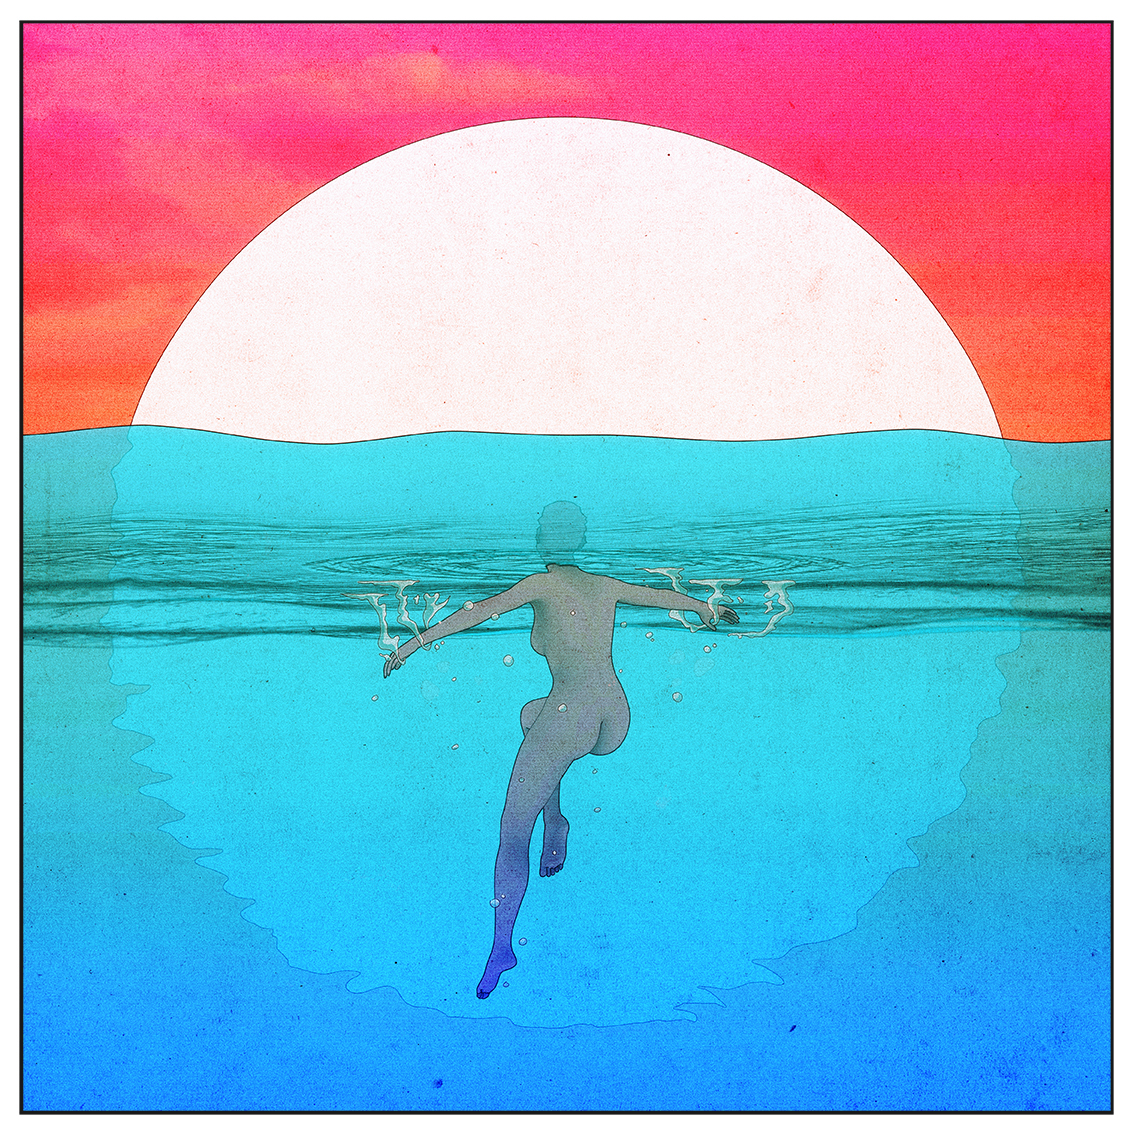 personal project album cover square ratio 1:1 Colourful  surreal surrealistic